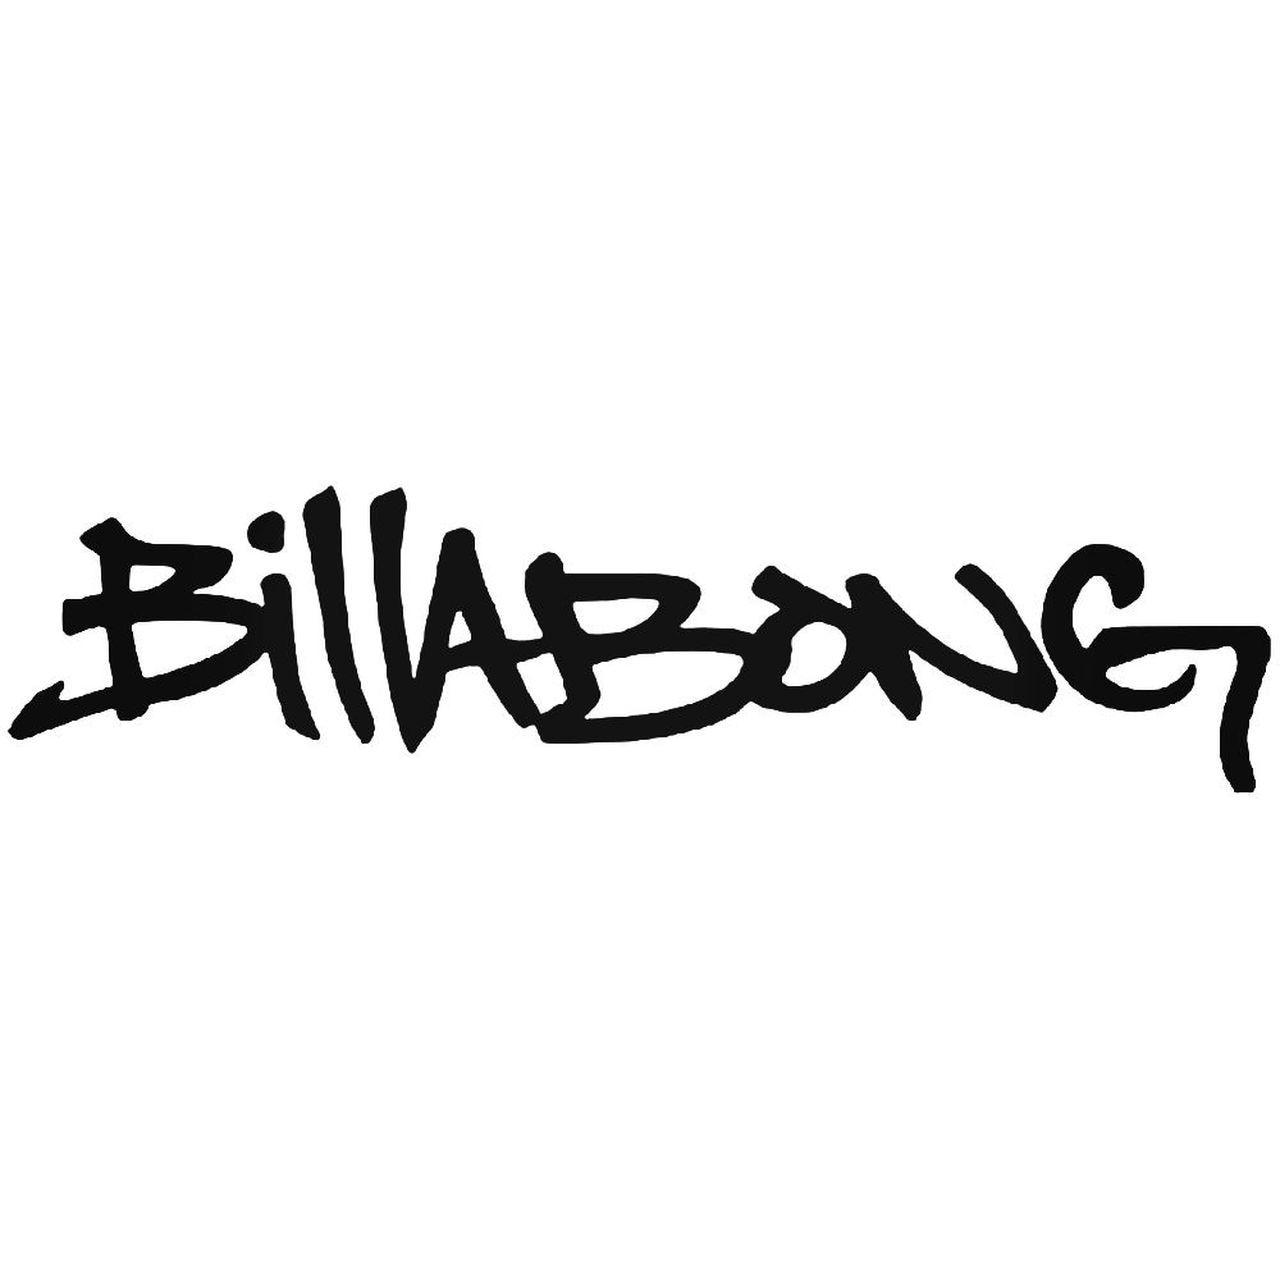 Billibong Logo - Billabong Logo 4 Sticker